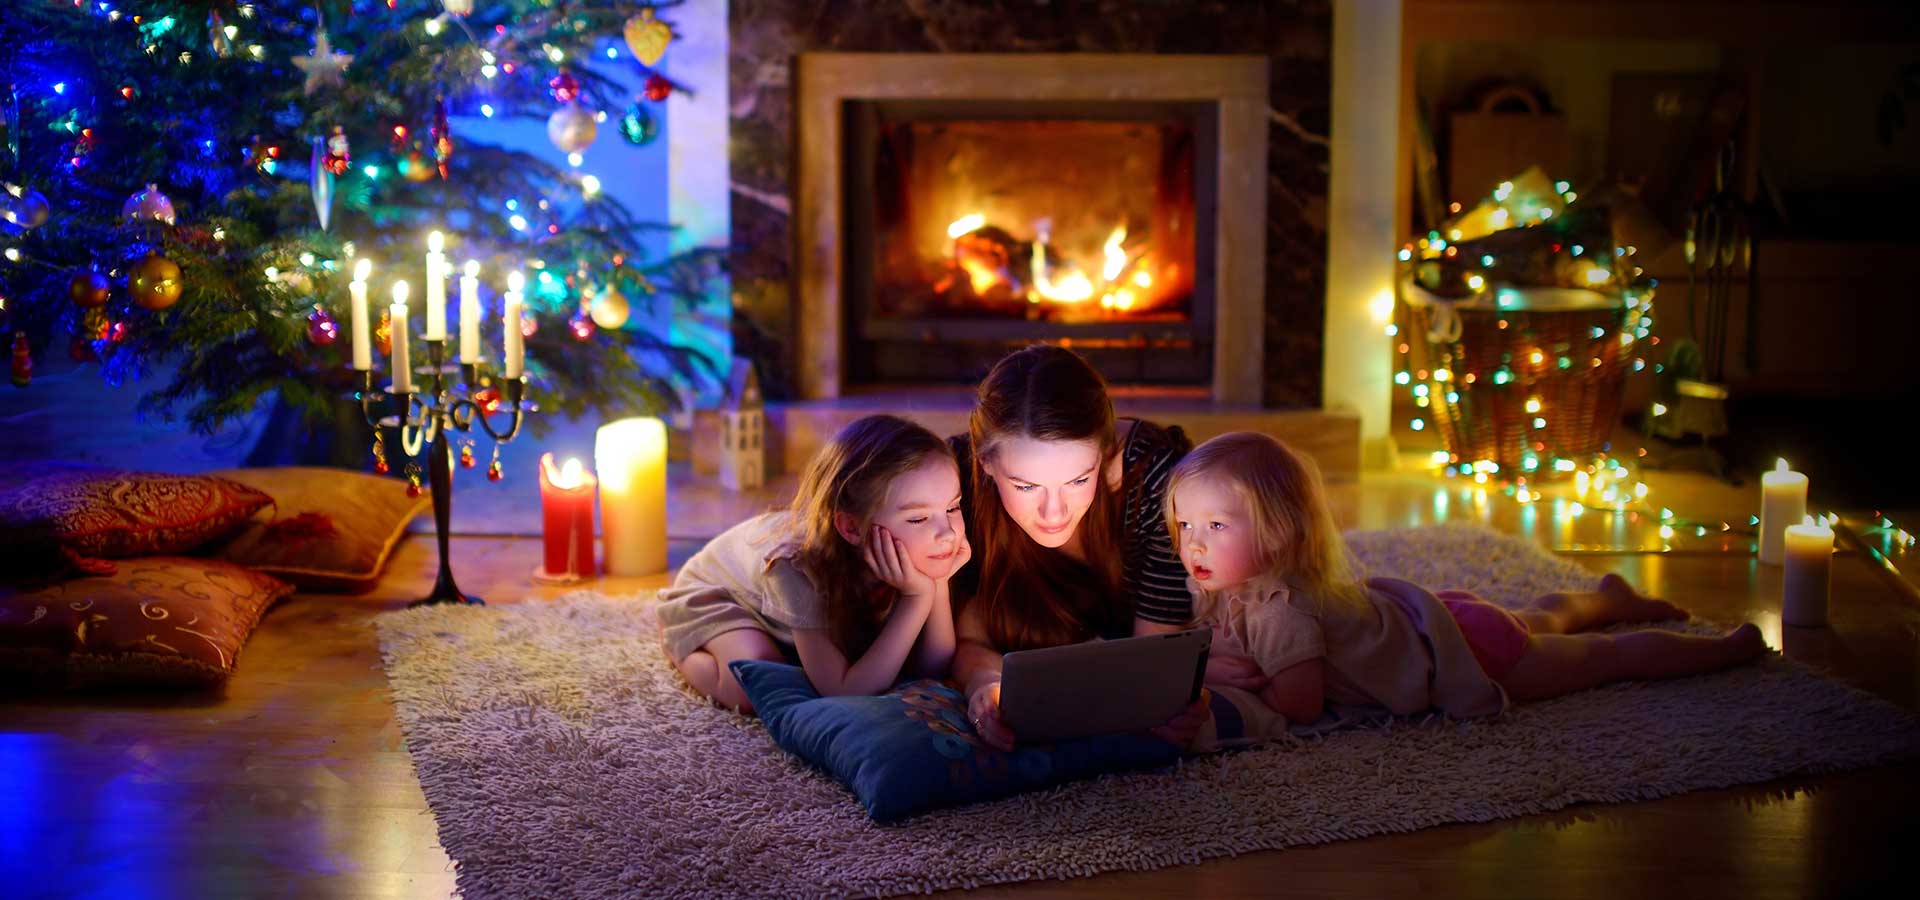 Met kerst gezellig samen een film kijken is traditie bij veel families